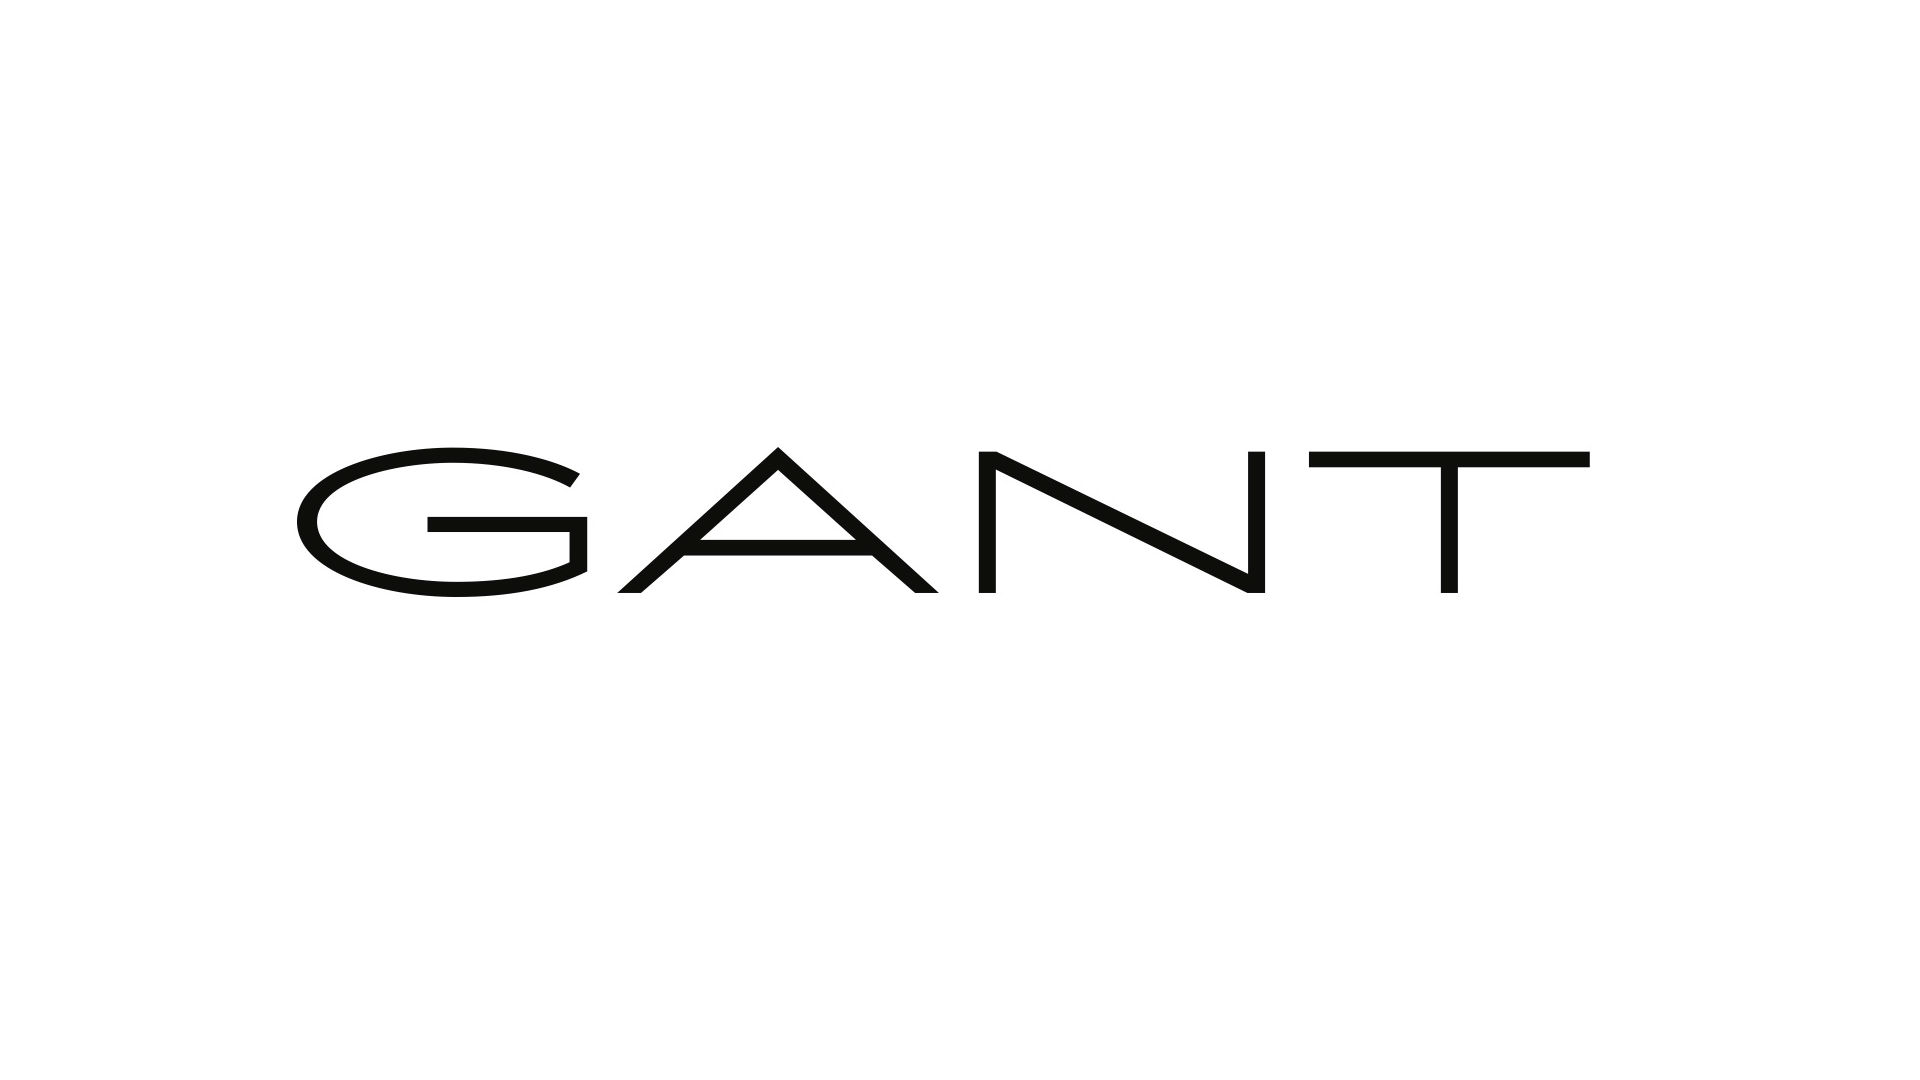 Gant logo